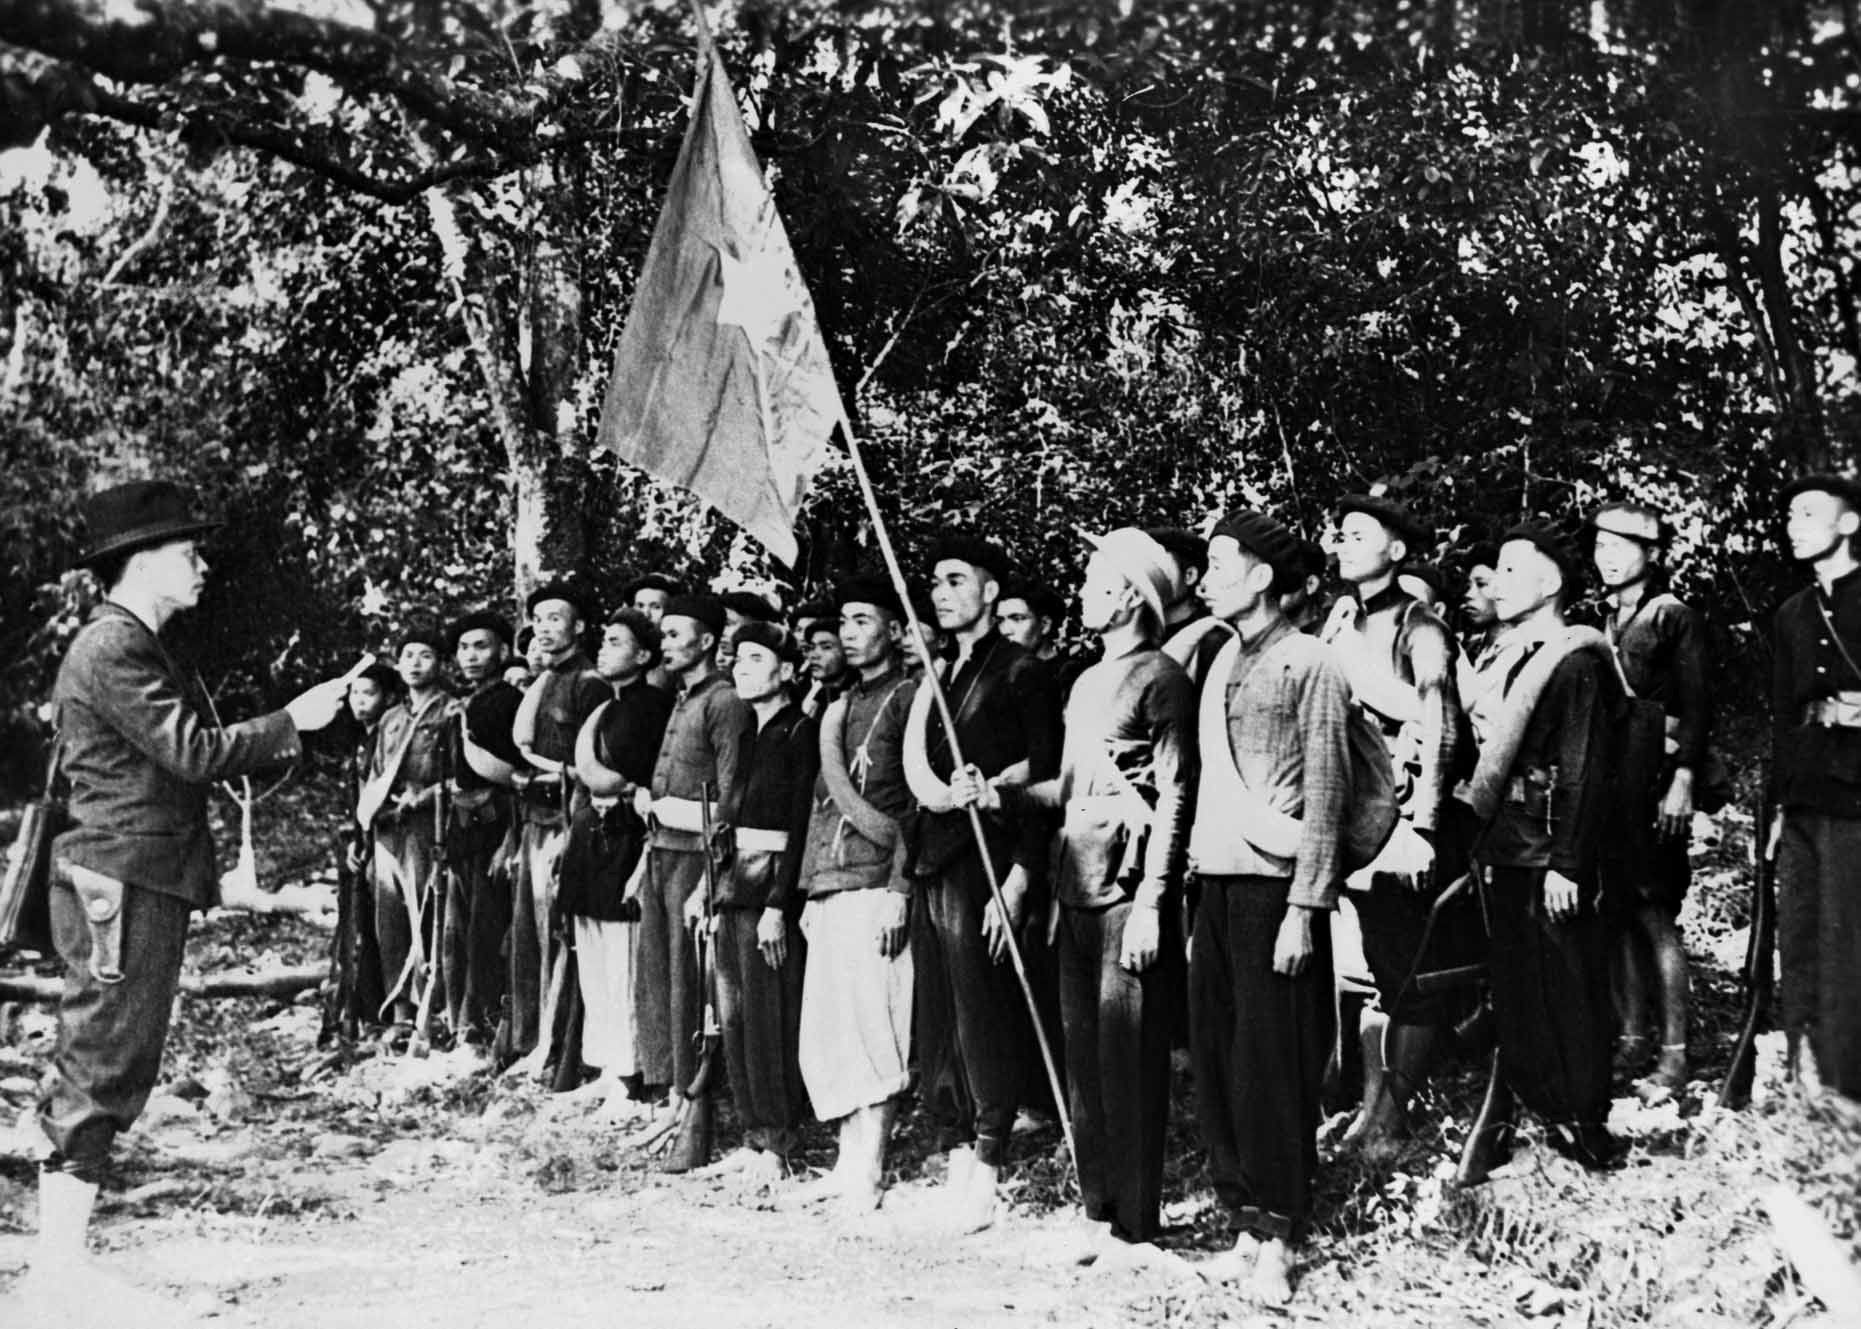 Ngày 22/12/1944, Đội Việt Nam Tuyên truyền Giải phóng quân được thành lập tại khu rừng Trần Hưng Đạo ở châu Nguyên Bình, tỉnh Cao Bằng, do đồng chí Võ Nguyên Giáp chỉ huy, trực tiếp tham gia chiến đấu bên cạnh các cơ sở, lực lượng dân quân ở các địa phương, đóng vai trò nòng cốt, quyết định sự thành công của Cách mạng Tháng Tám. (Ảnh: Tư liệu TTXVN)